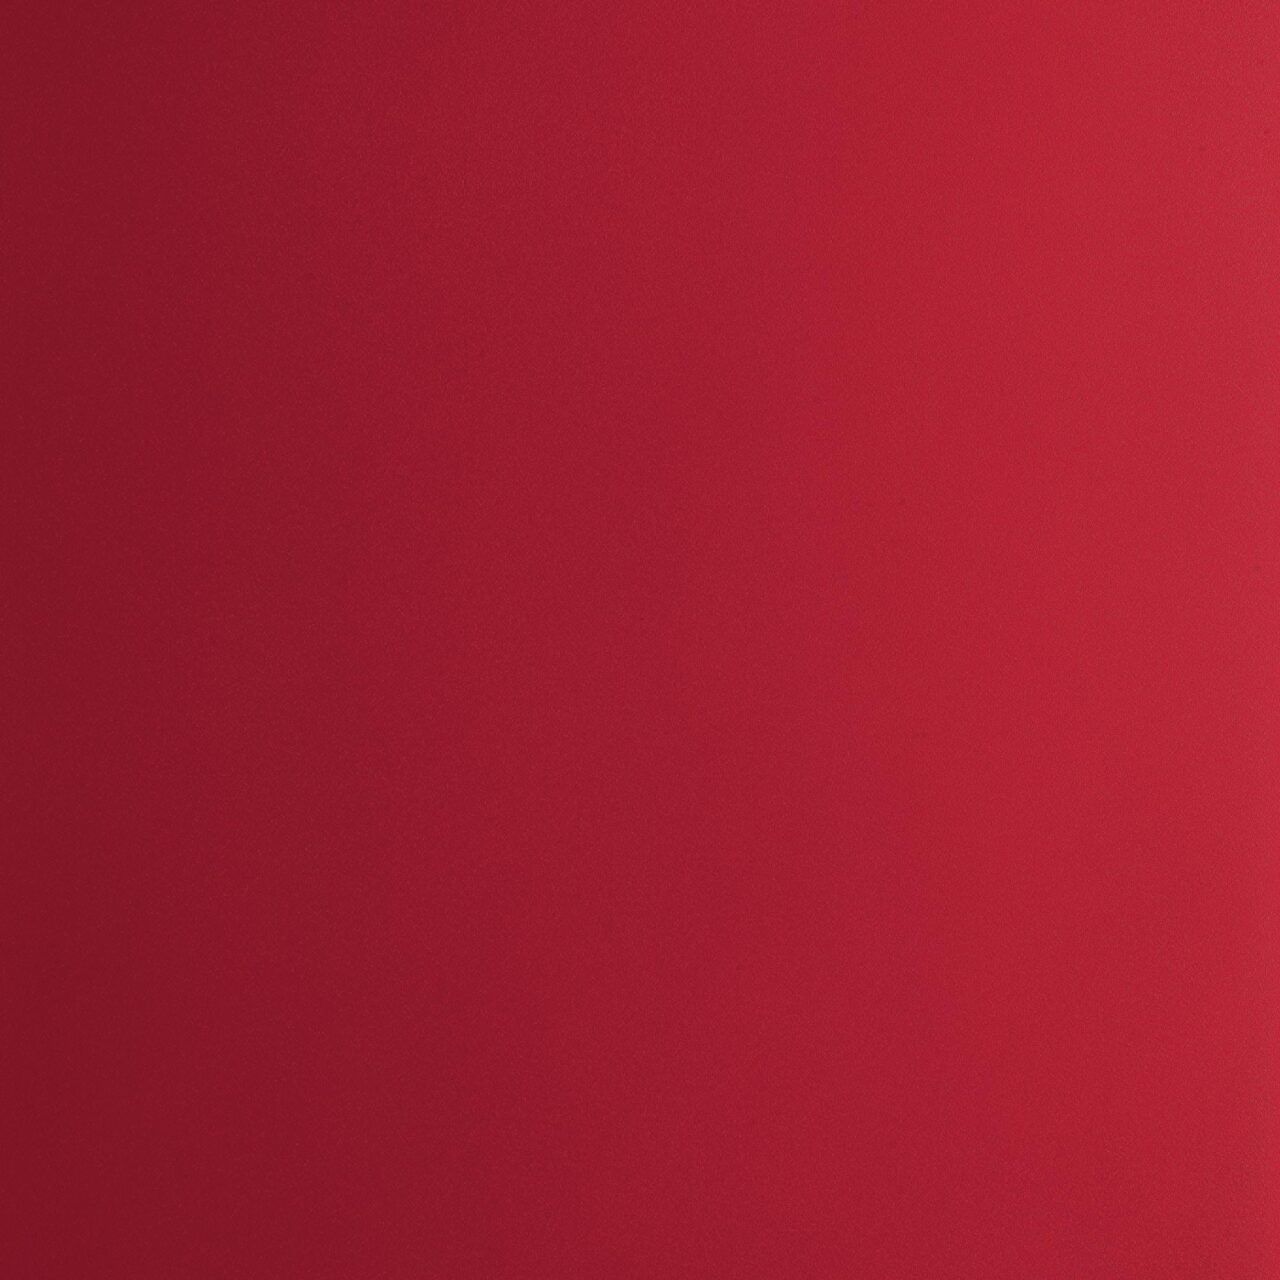 09.18 - Ruby Red (RAL 3003) - Metal essential